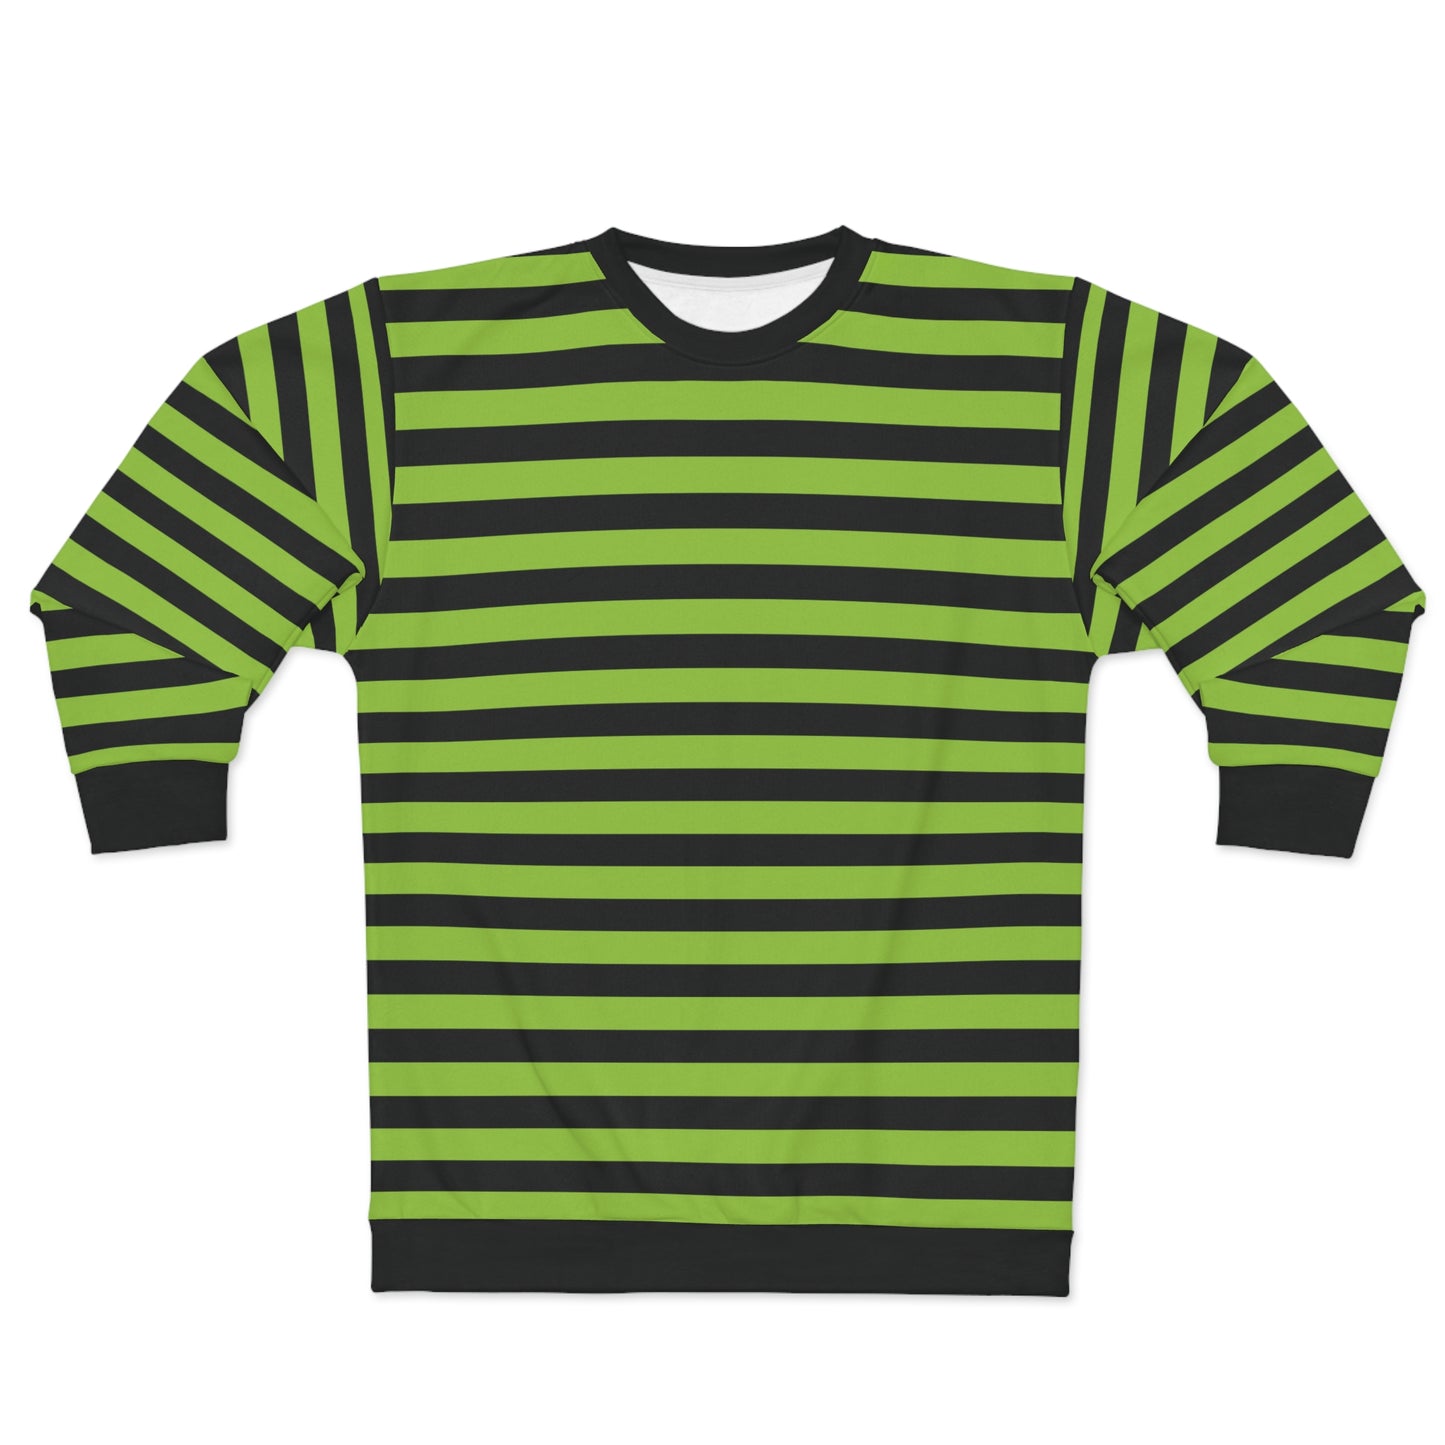 Schwarz-grün gestreifter Pullover für Männer und Frauen